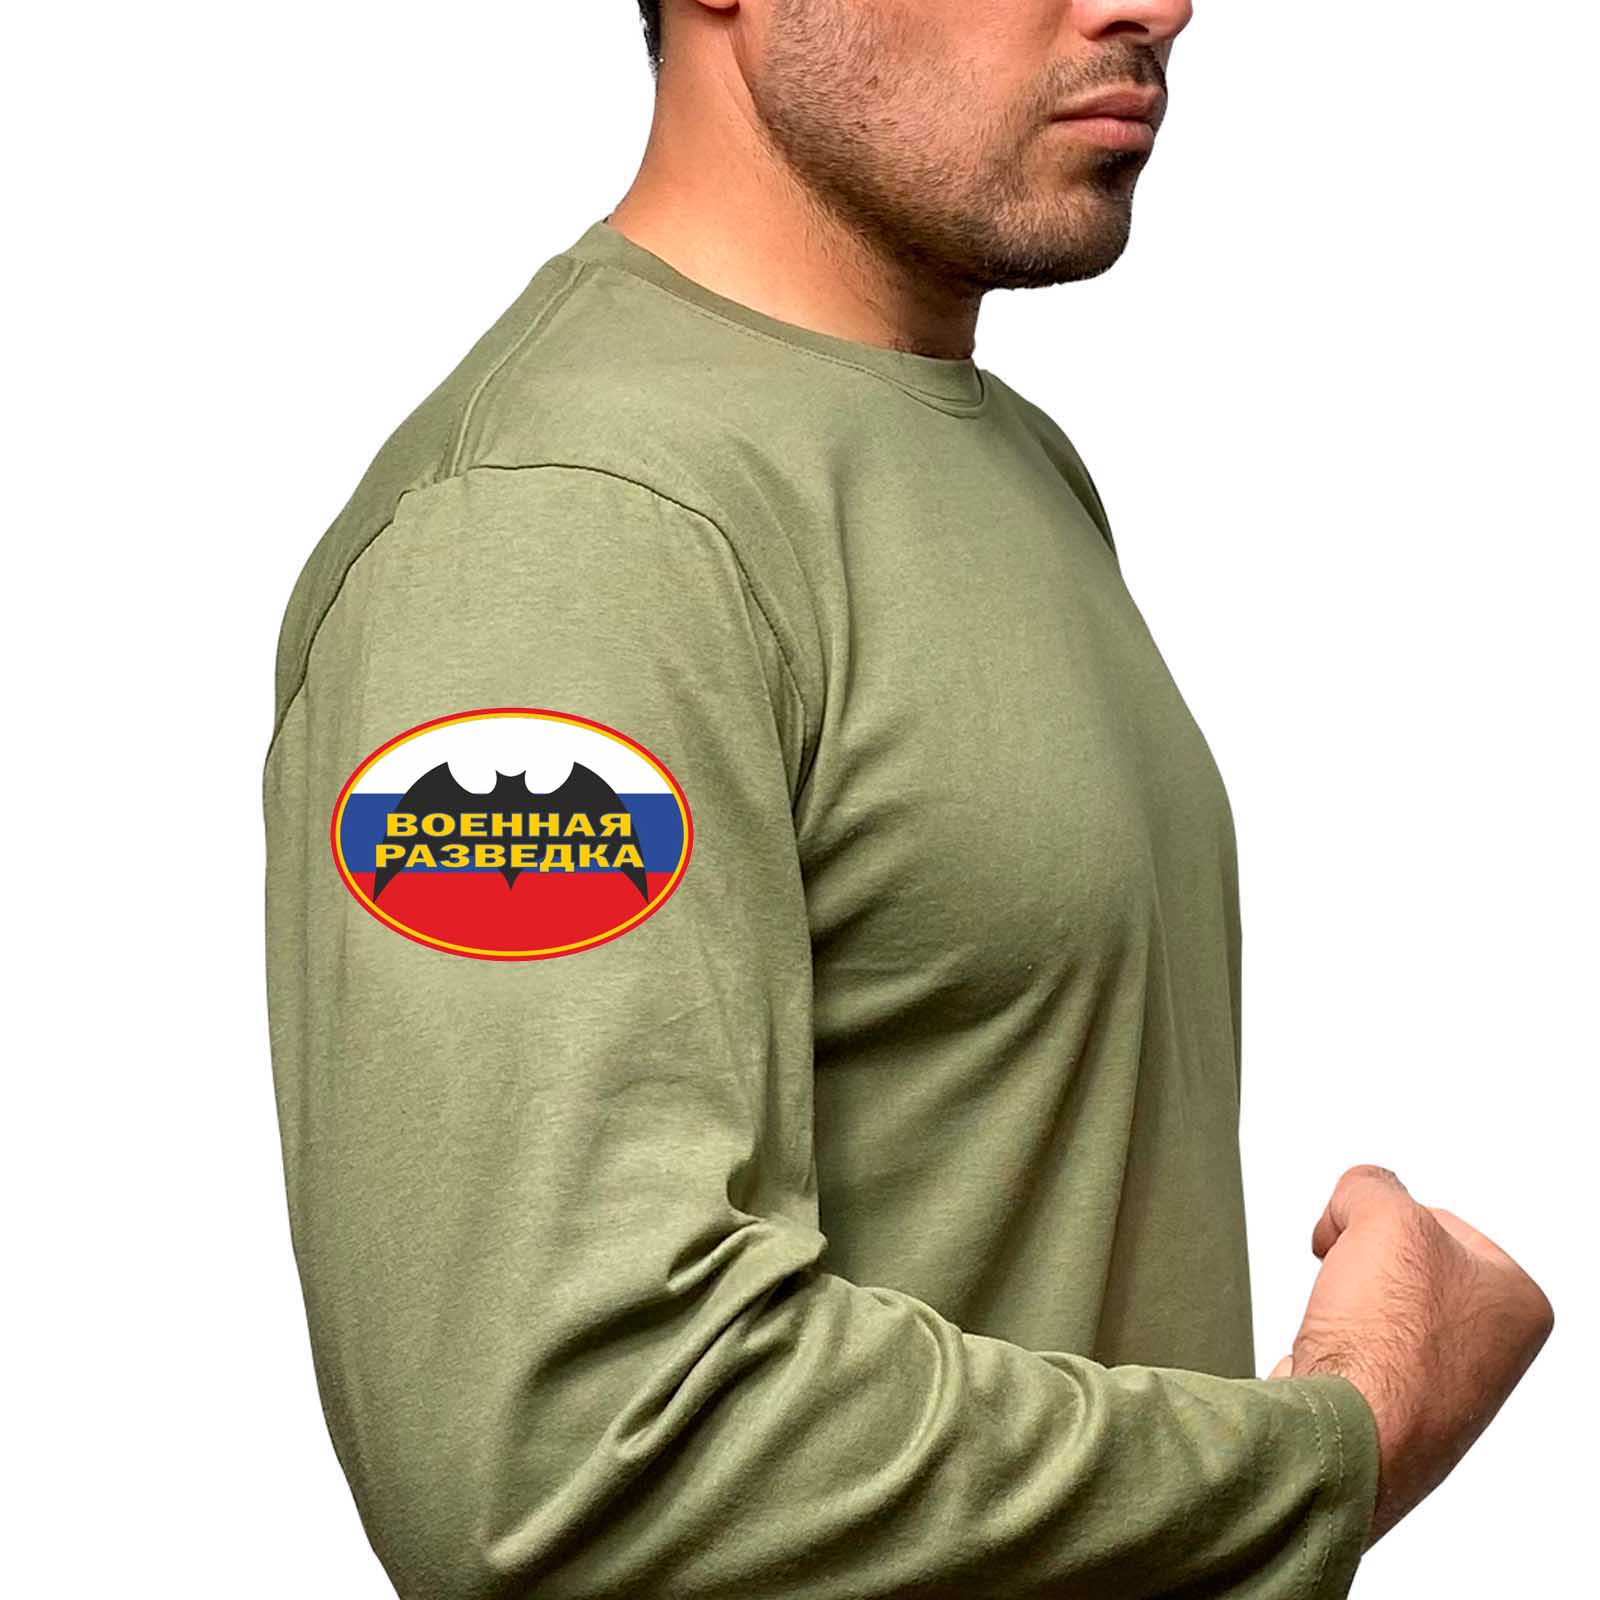 Купить футболку с длинным рукавом хлопковую с термотрансфером Военная разведка онлайн